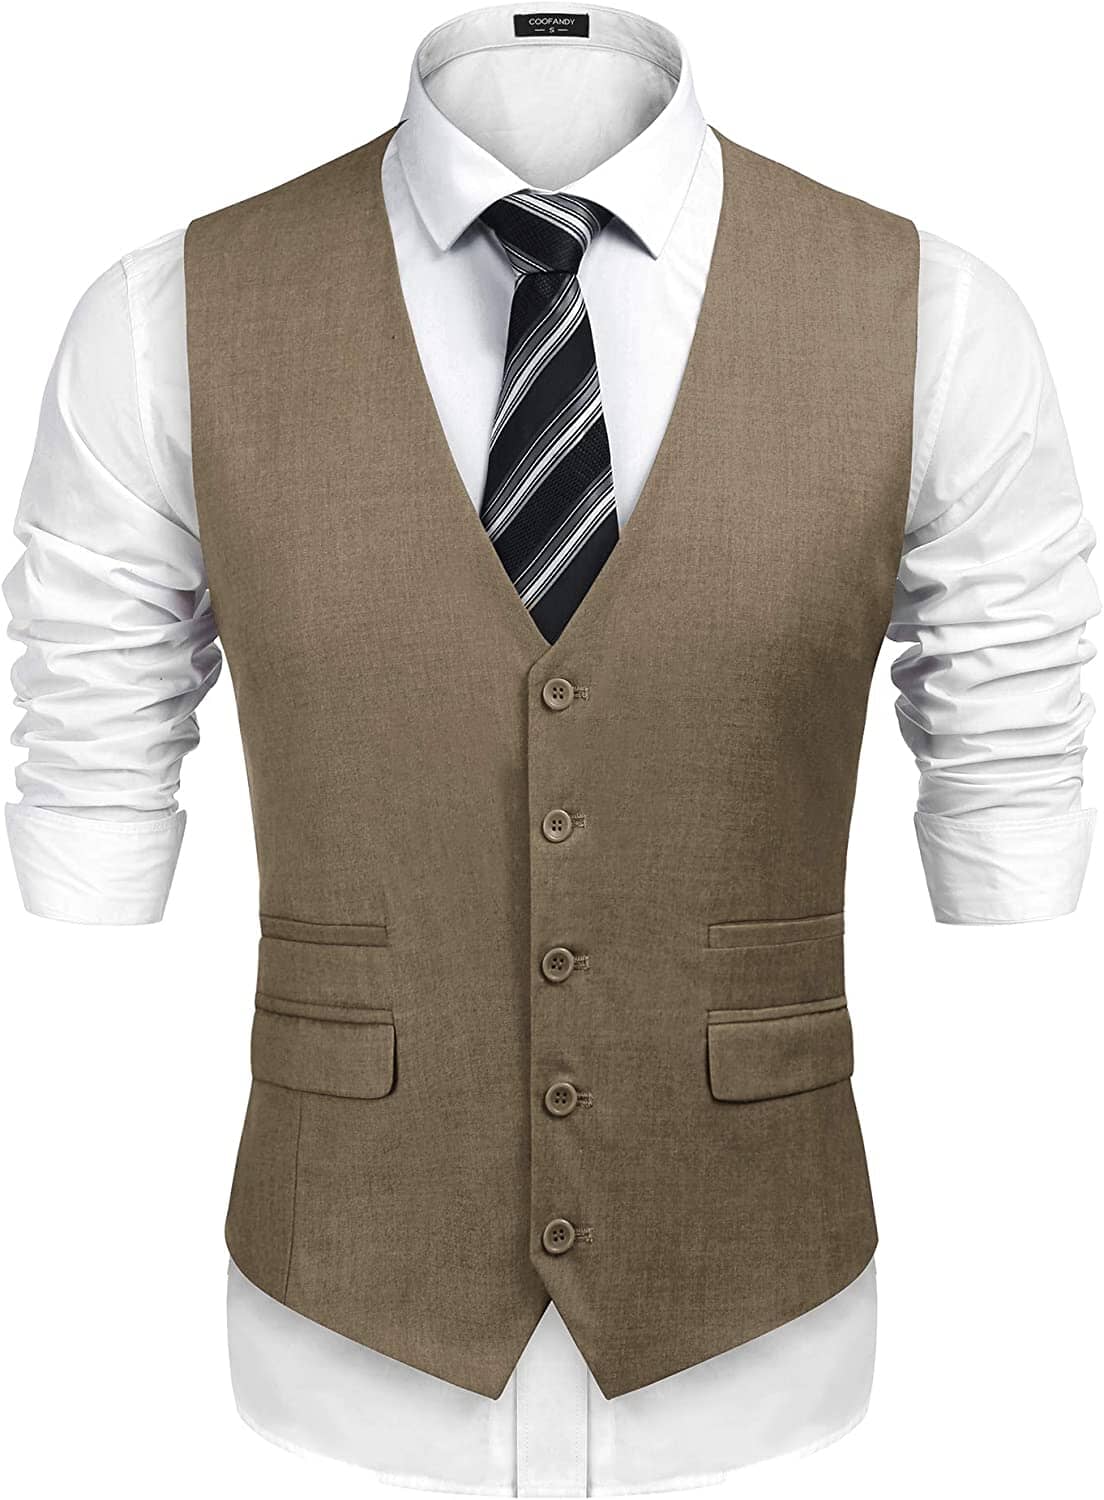 Slim Fit Business Suit Vest - Professional Fabric, Adjustable Belt ...